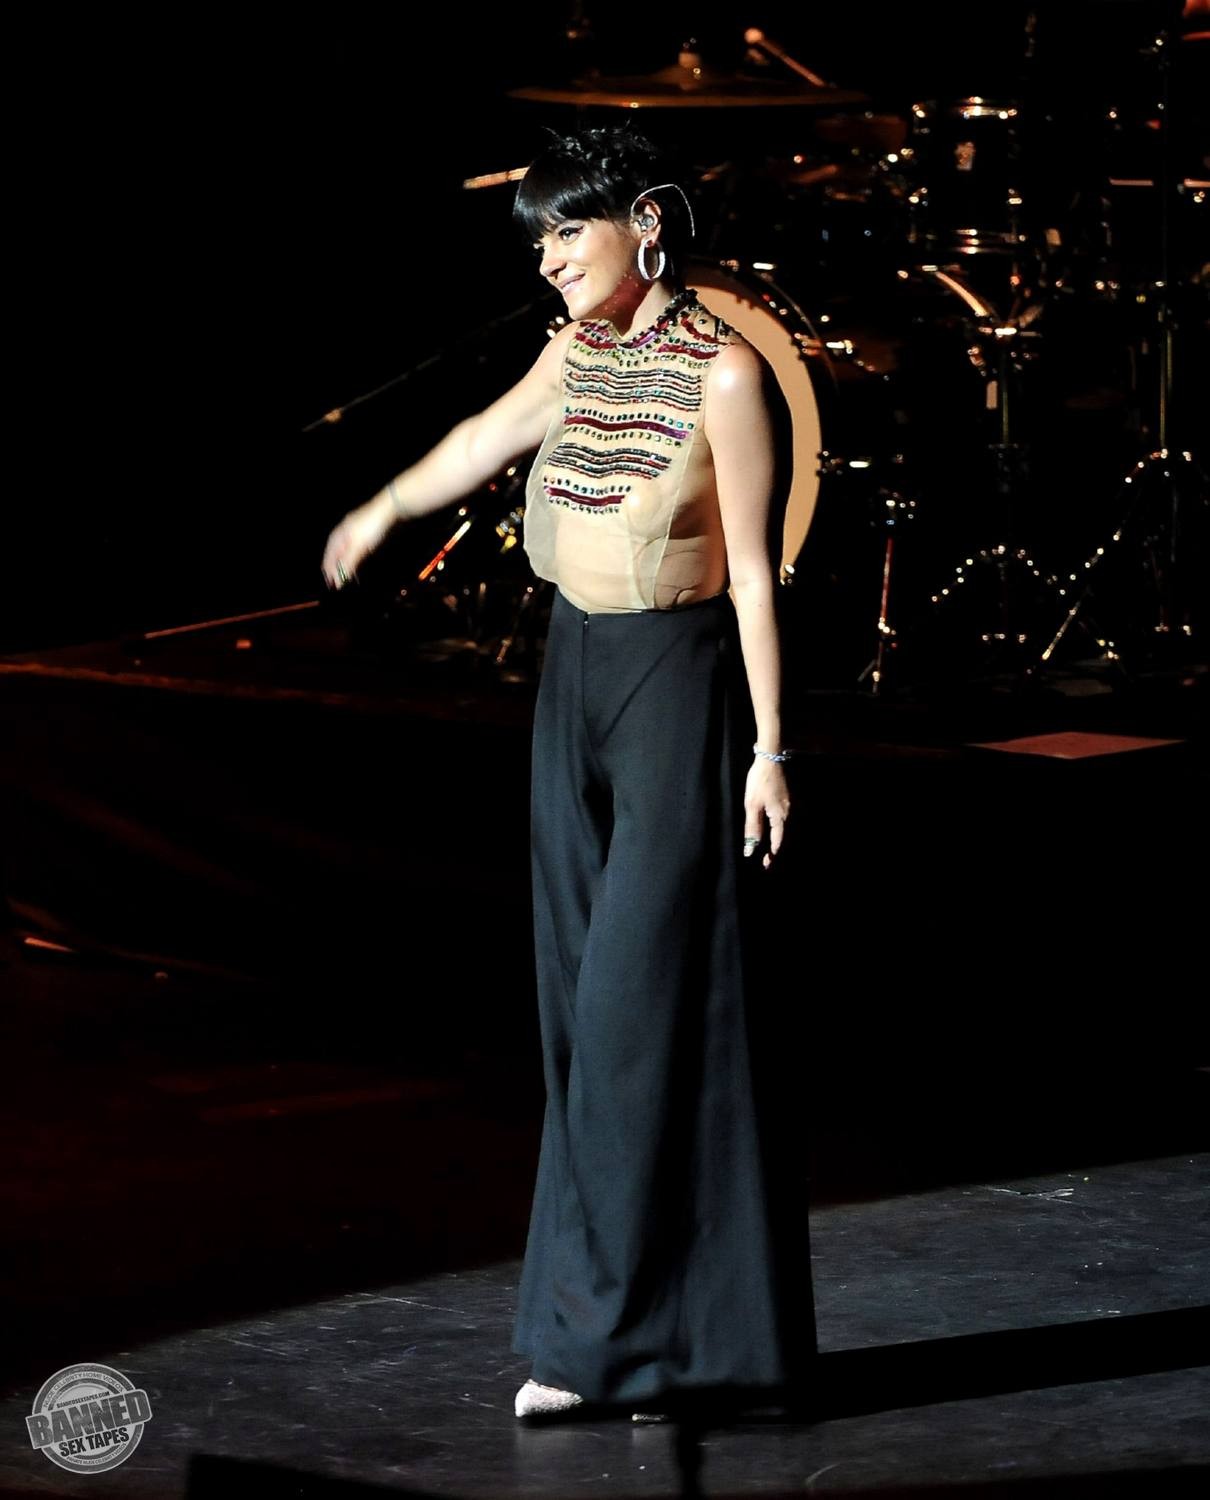 Lily allen montre ses seins nus à travers un haut transparent pendant un concert
 #75191585